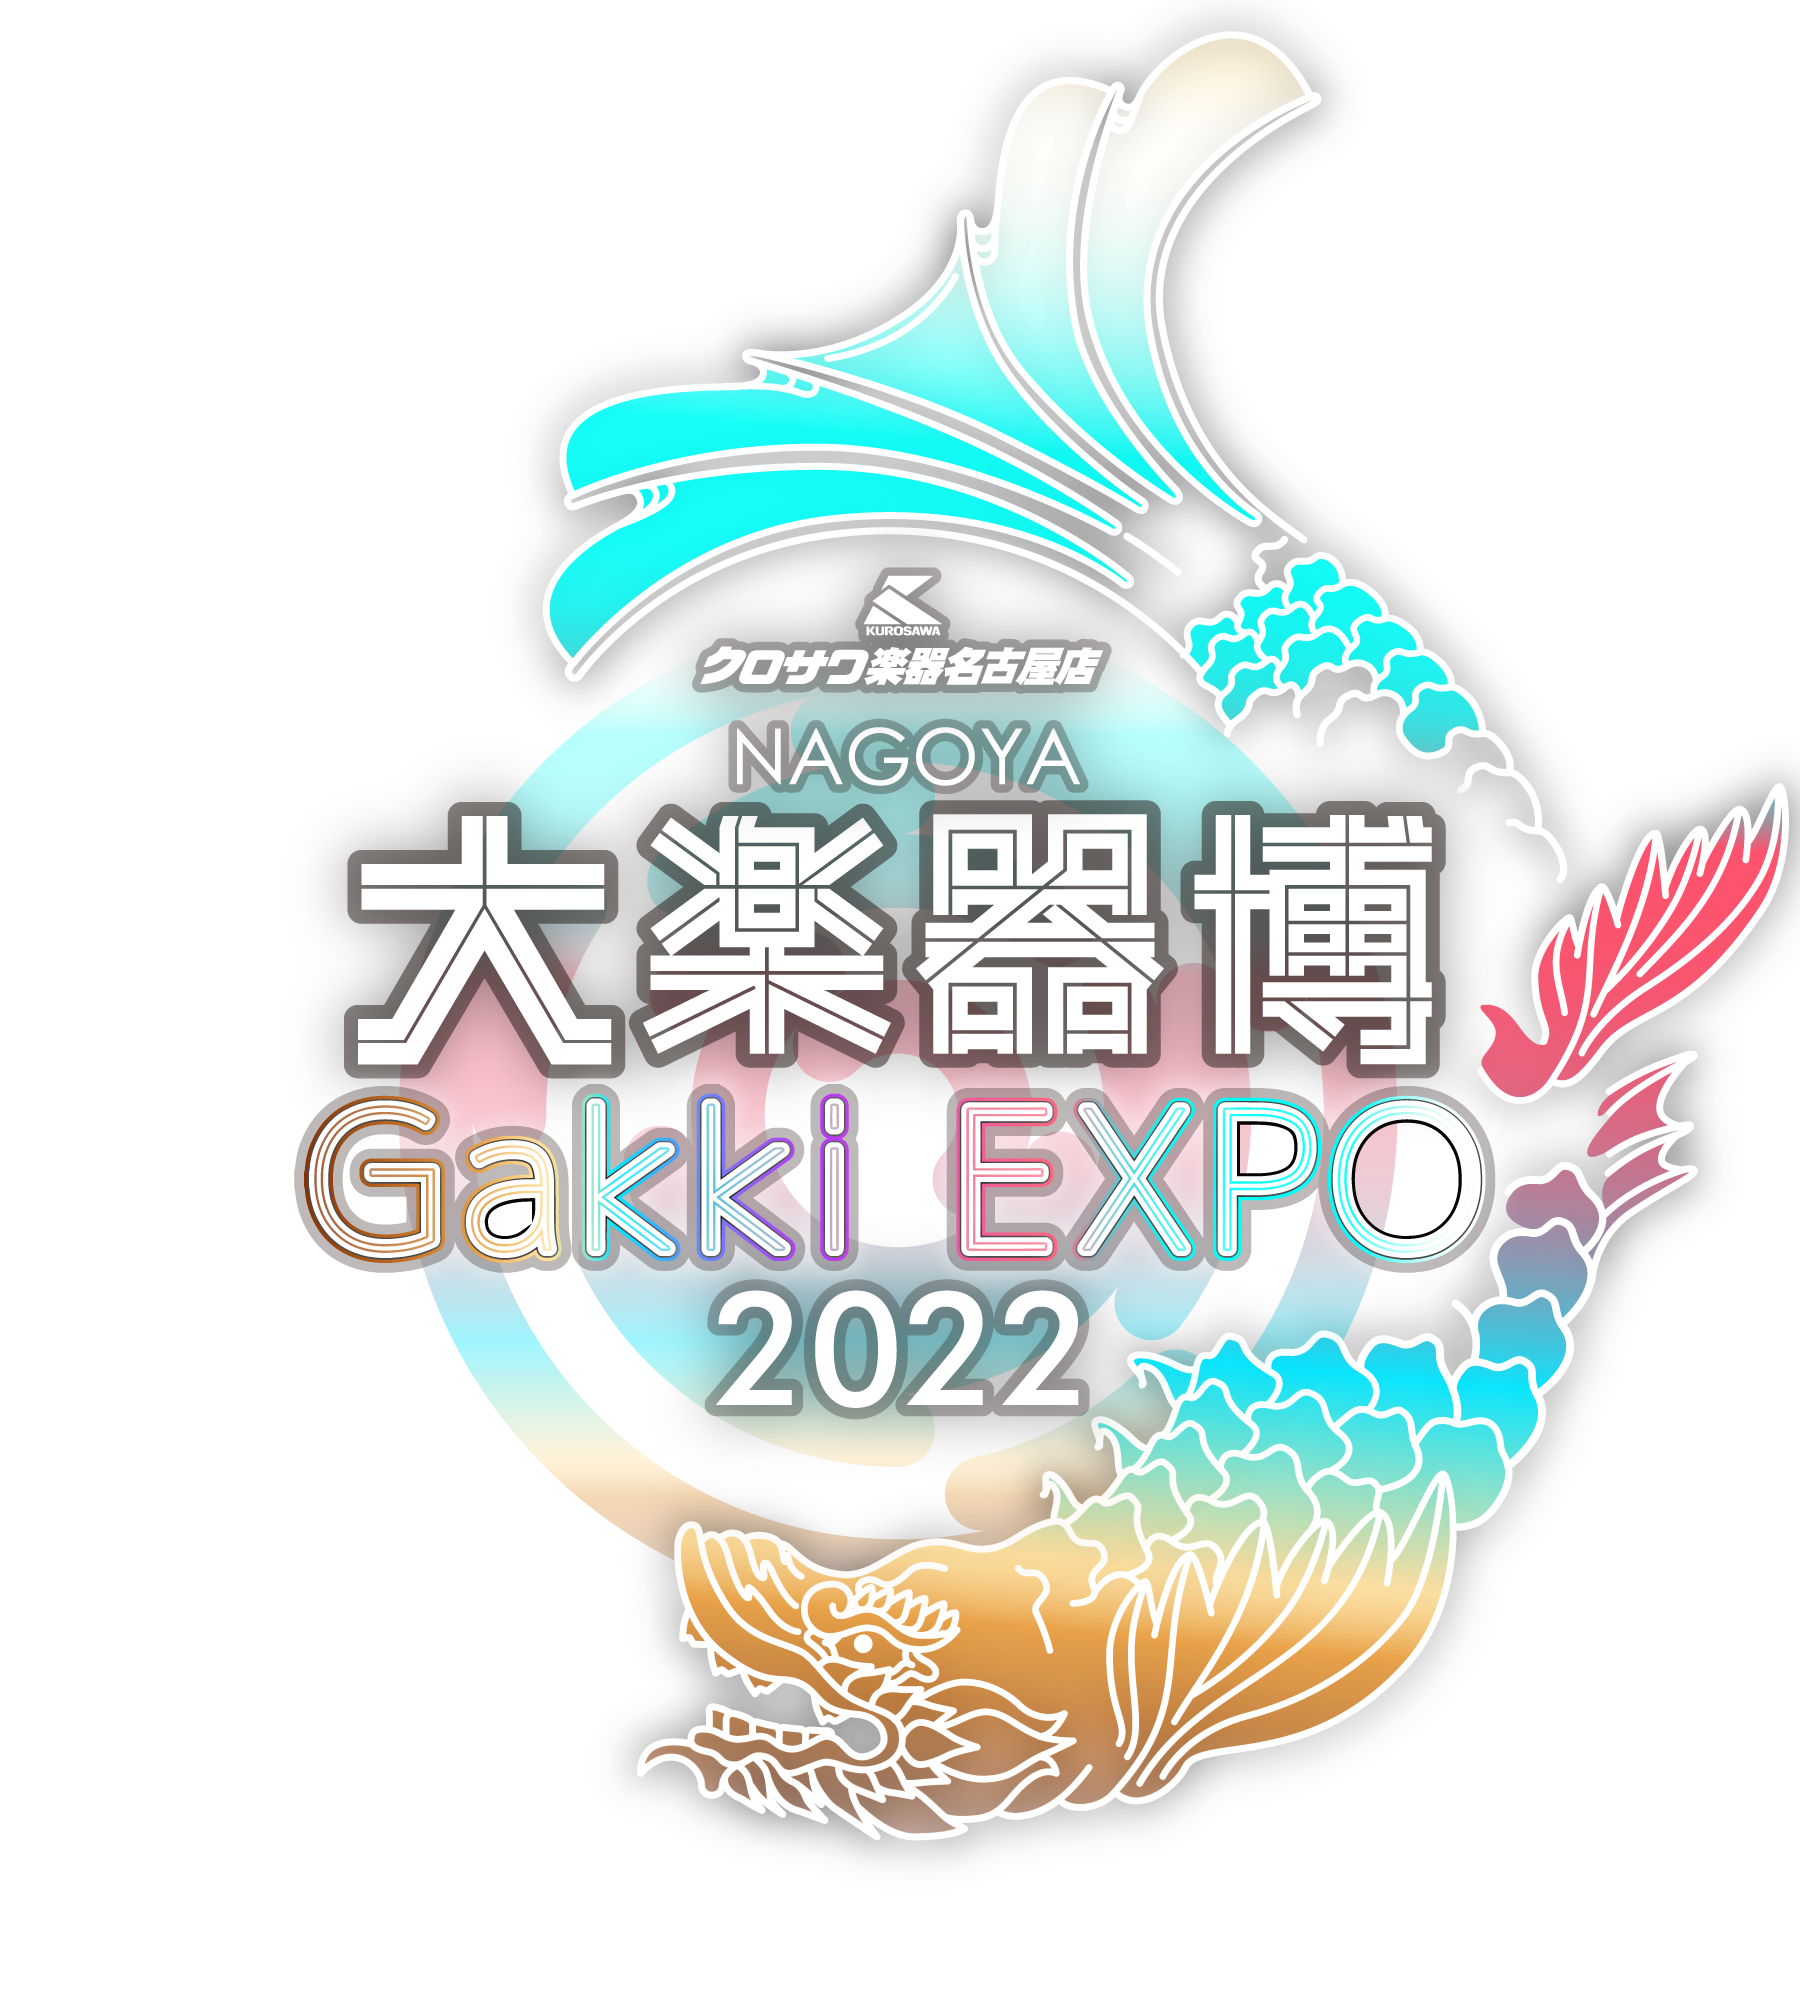 名古屋大楽器博2021 -NAGOYA Gakki EXPO’2021-